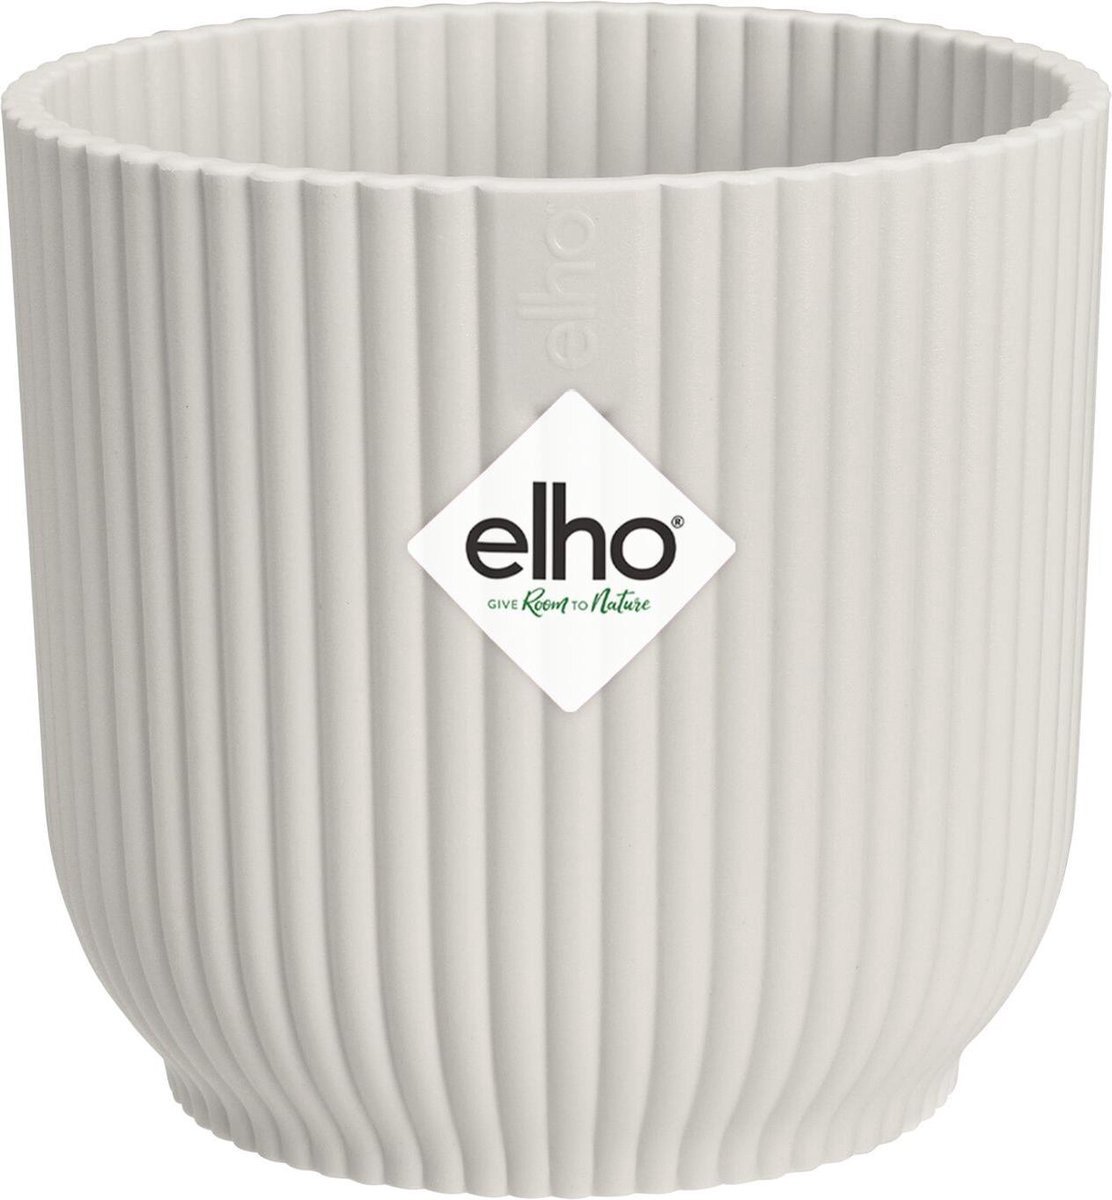 elho Vibes Fold Rond Mini 7 - Bloempot voor Binnen - 100% Gerecycled Plastic - Ø 7 x H 6,5 - Wit/Zijdewit